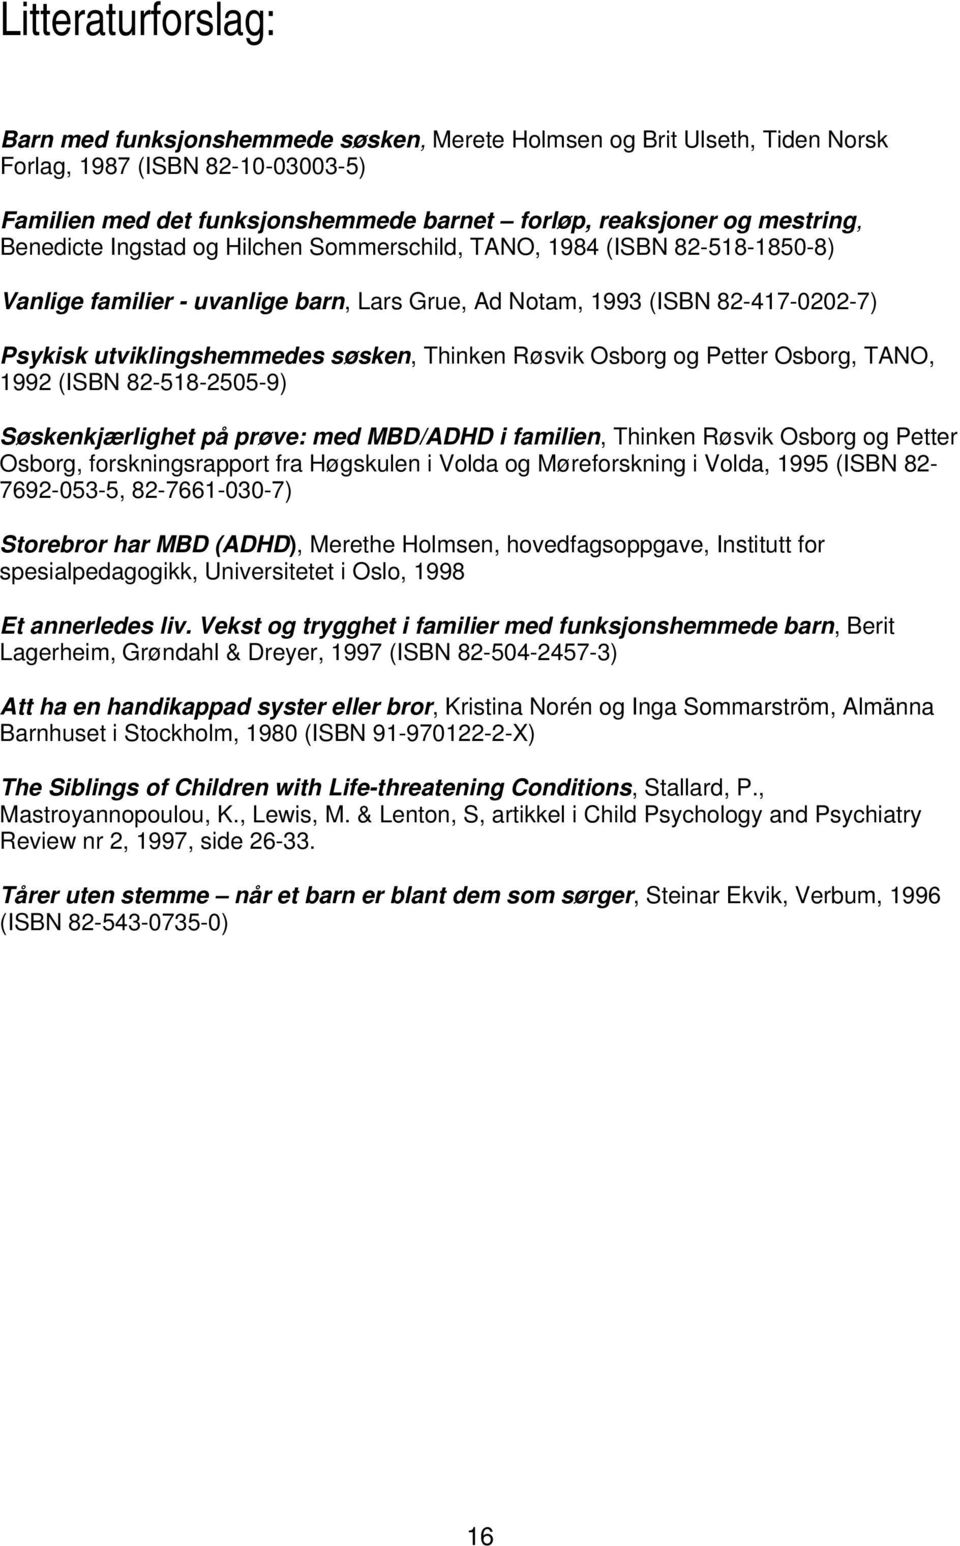 søsken, Thinken Røsvik Osborg og Petter Osborg, TANO, 1992 (ISBN 82-518-2505-9) Søskenkjærlighet på prøve: med MBD/ADHD i familien, Thinken Røsvik Osborg og Petter Osborg, forskningsrapport fra